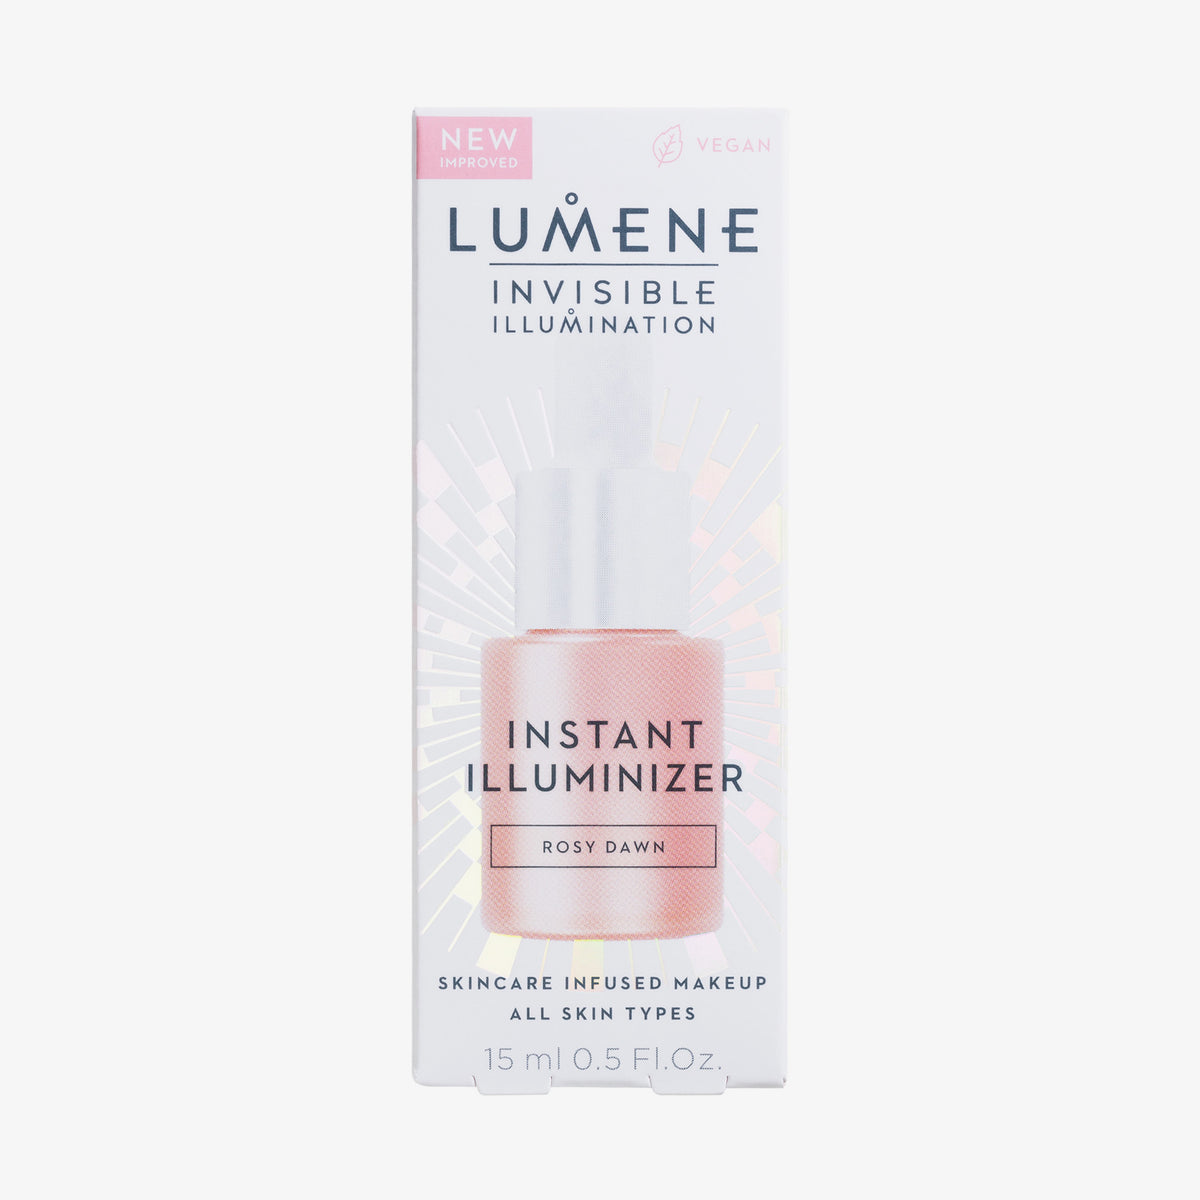 Lumene | INVISIBLE ILLUMINATION Illuminizer